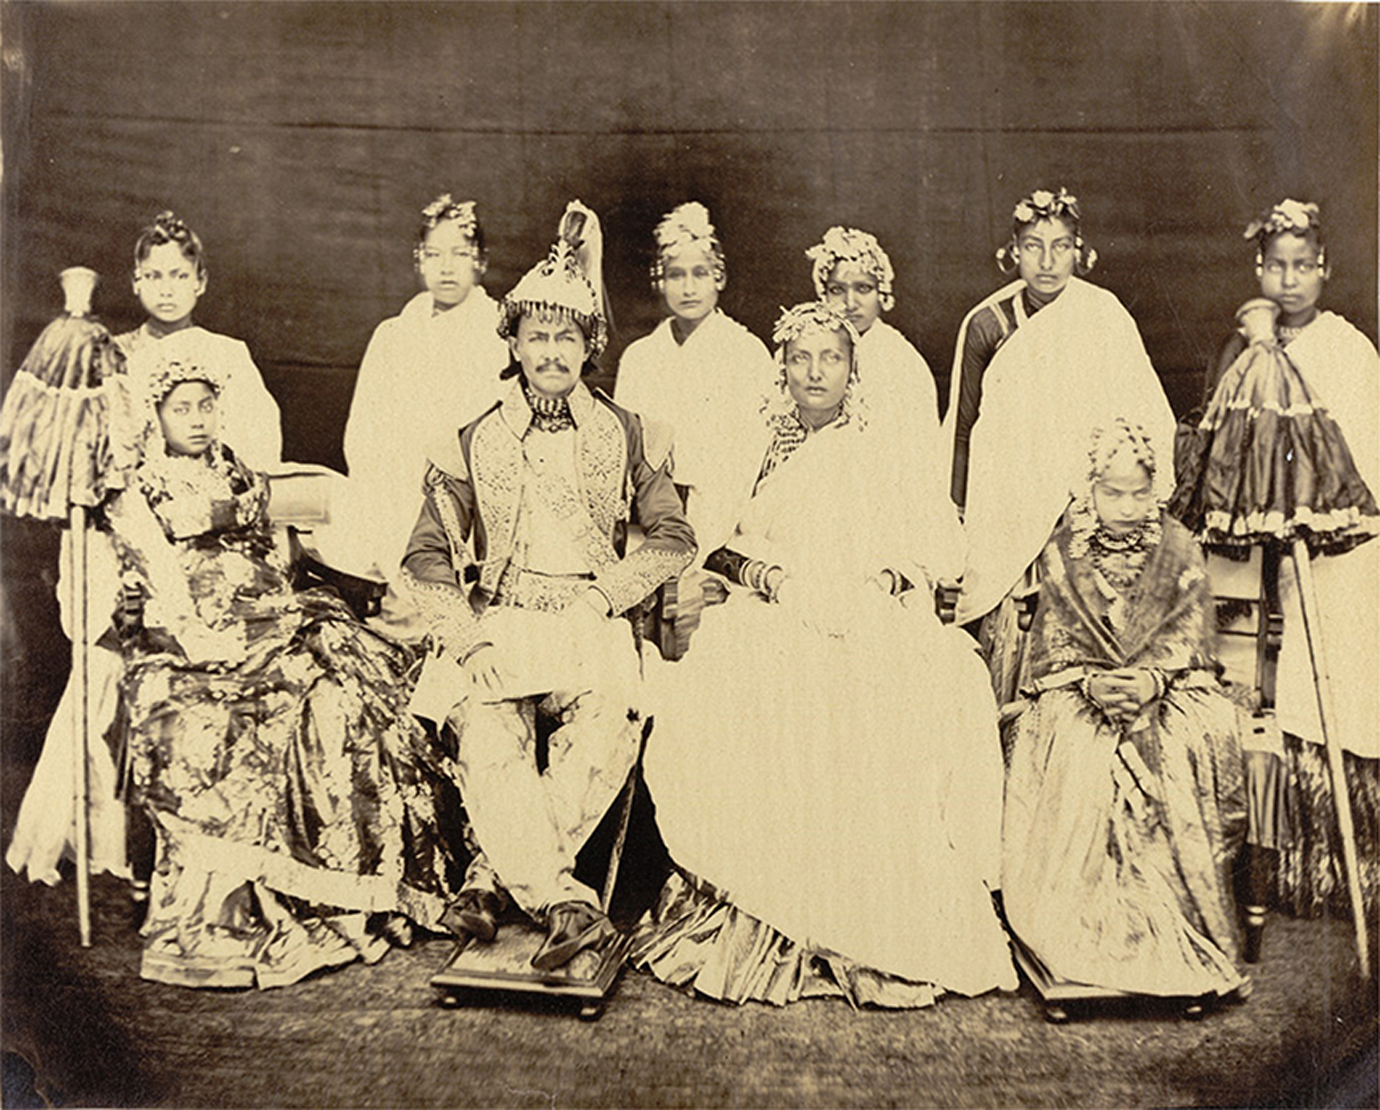 प्रथम राणा प्रधानमन्त्री जंगबहादुर राणाको परिवार । यो तस्वीर सुनिलको संकलनको पुरानोमध्येको हो । तस्वीर स्रोतः ब्रिटिस लाइब्रेरी । 